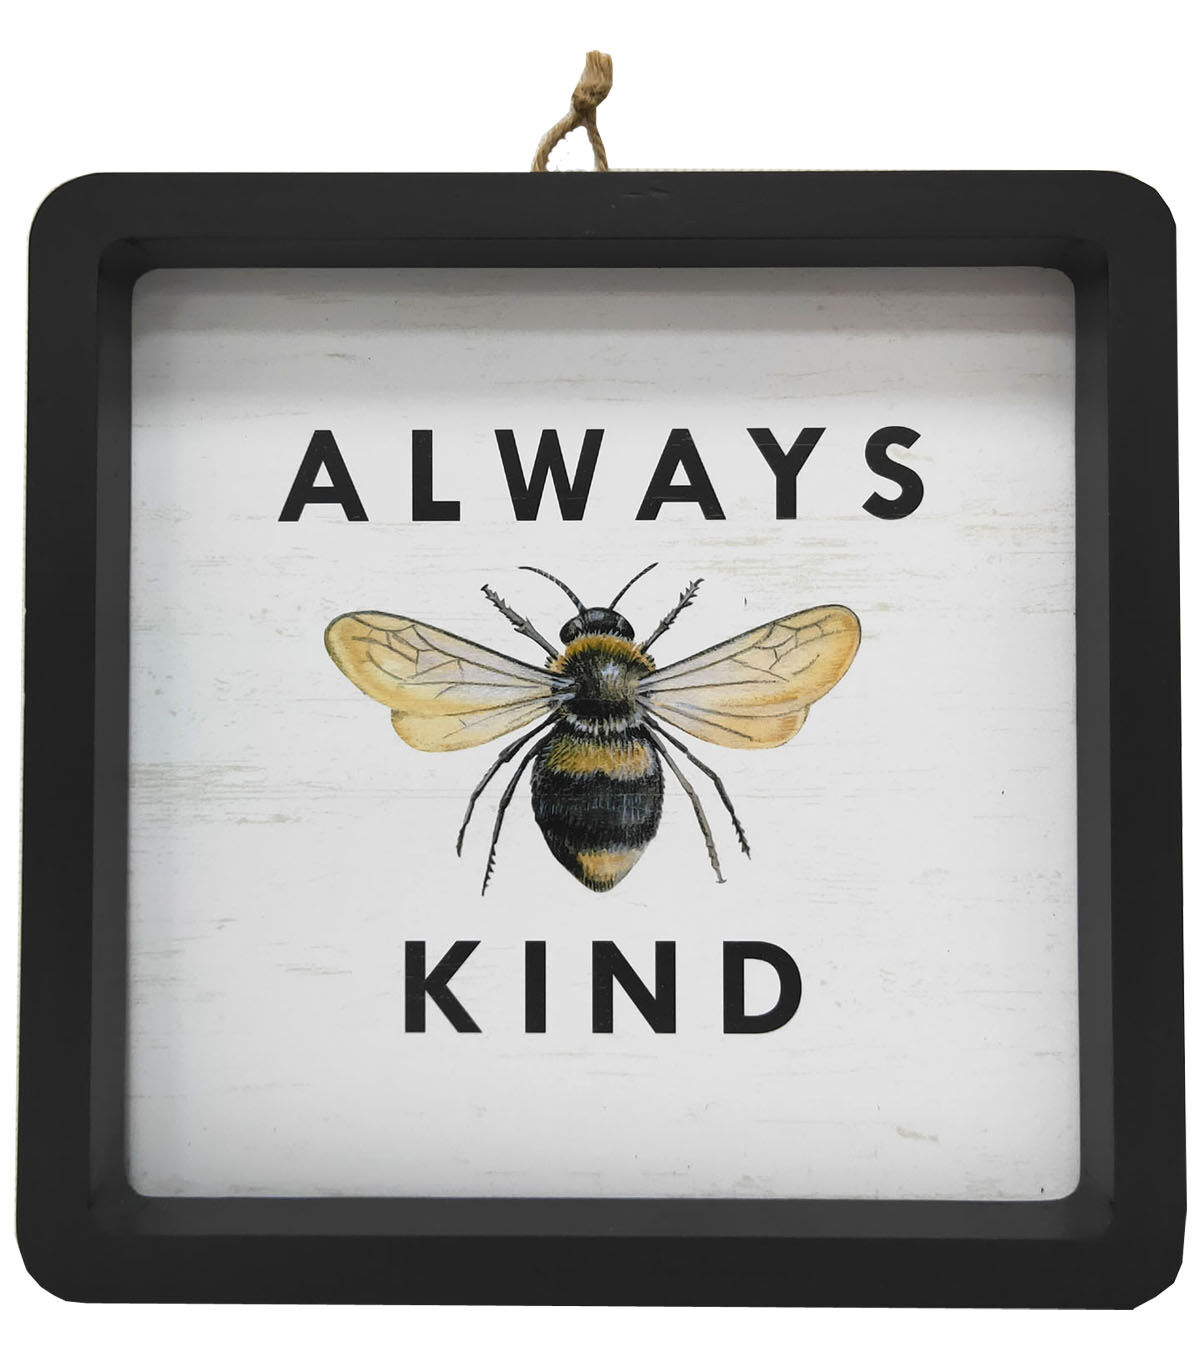 00005 Bee Kind plastic sign